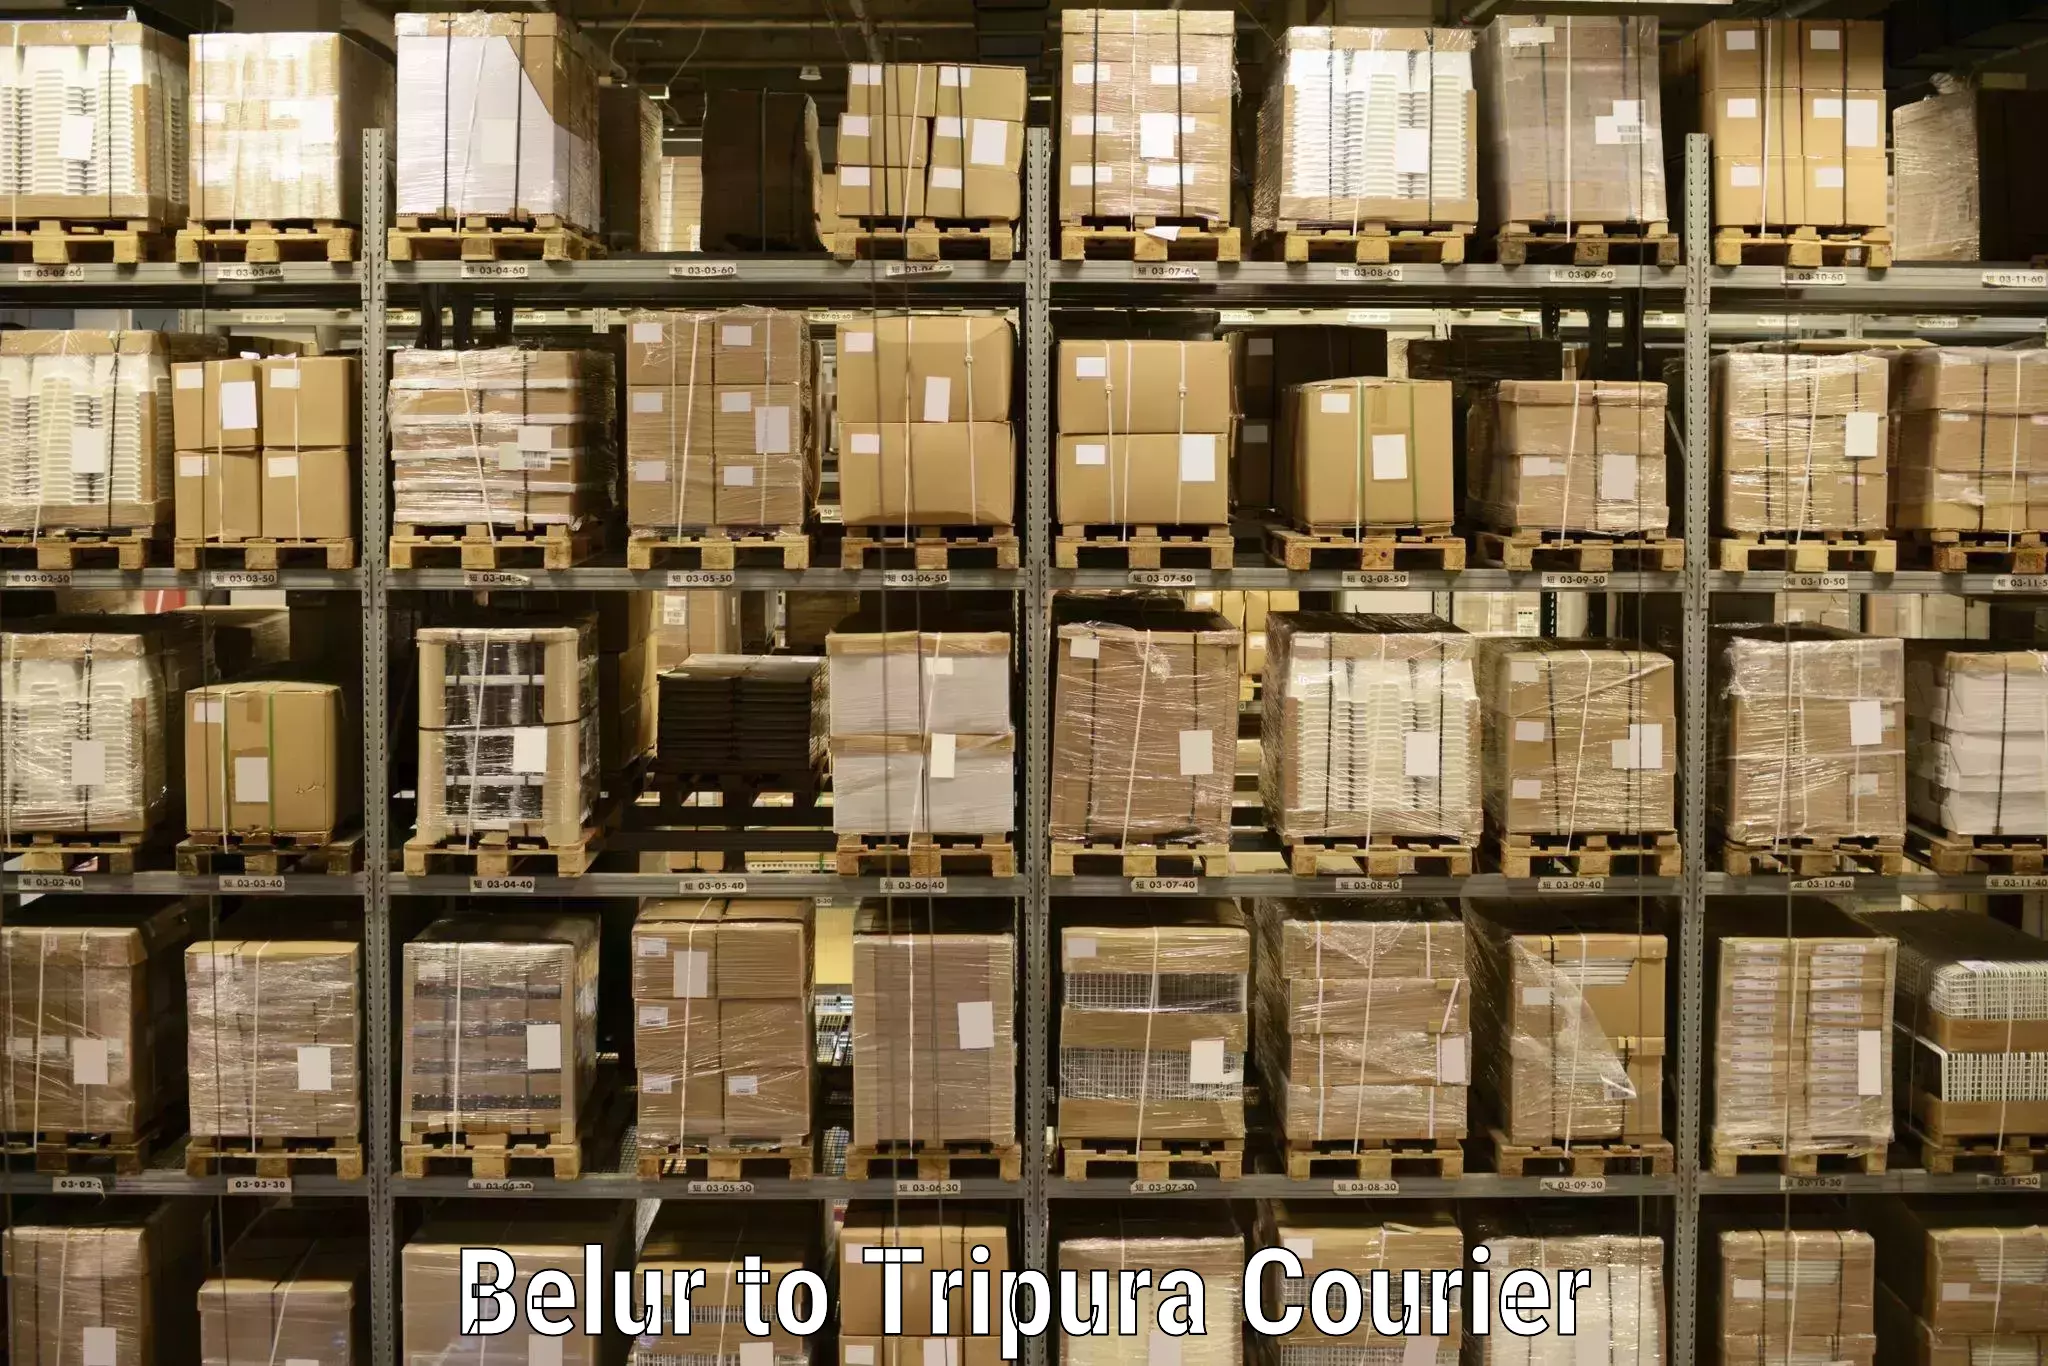 Efficient parcel service Belur to Tripura